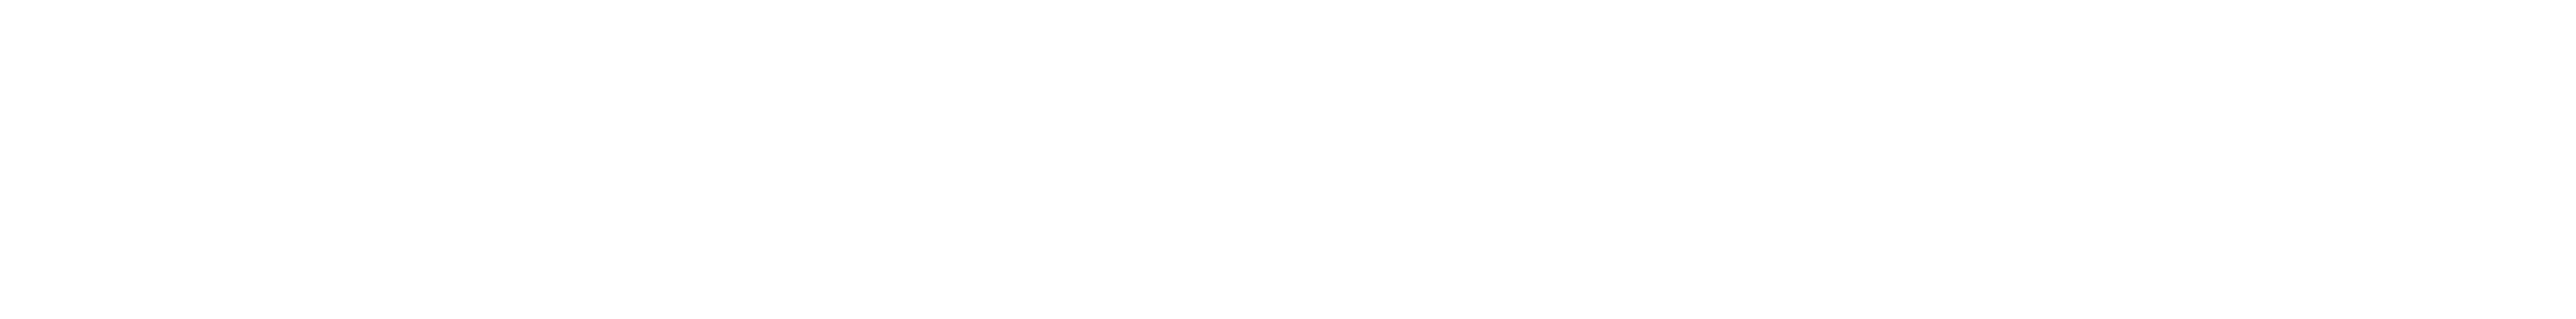 Schneeflocken – Gartenpflege im Winter